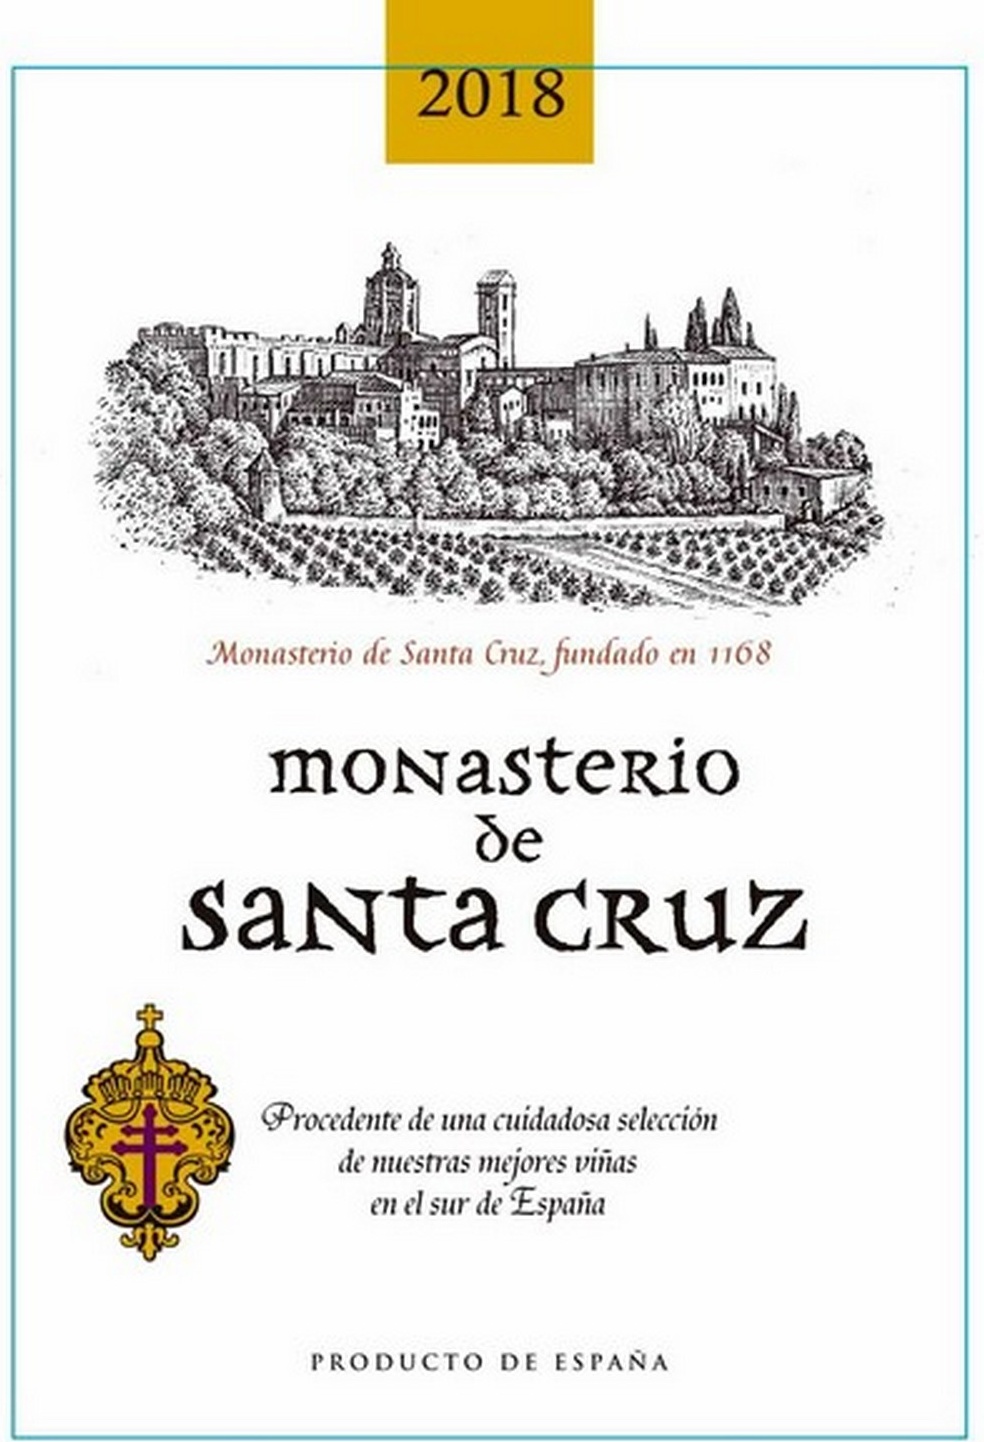 monasterio-de-santa-cruz-2018